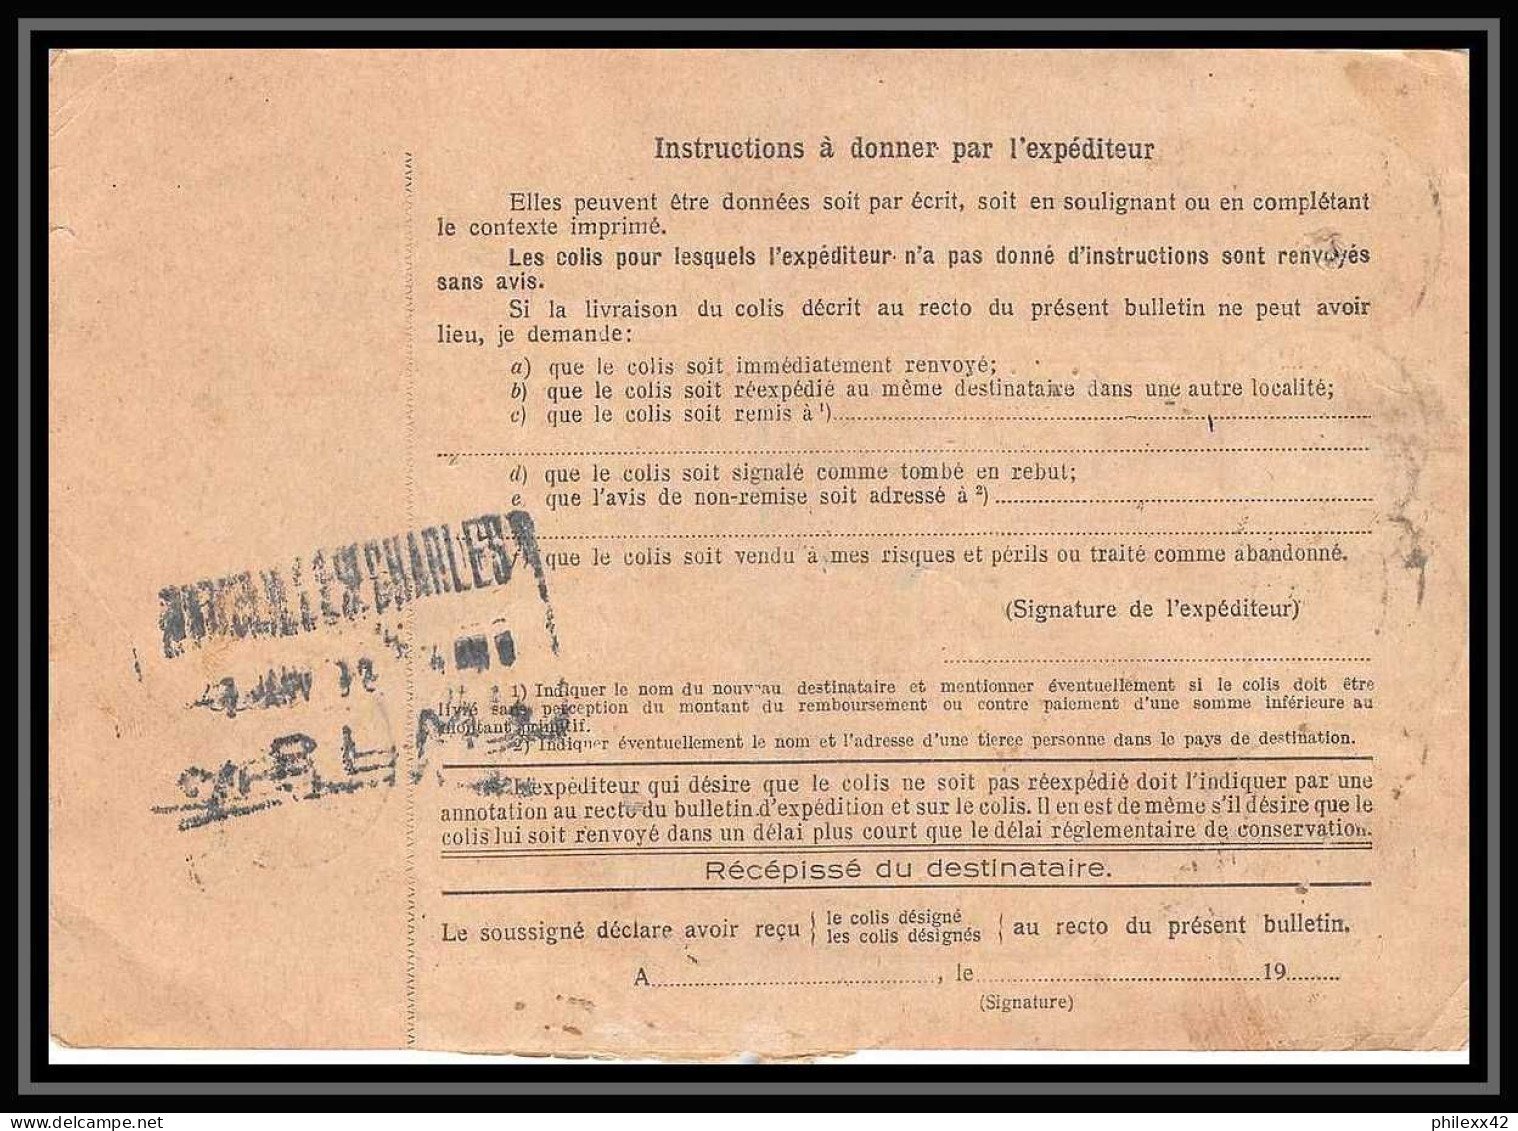 25212/ Bulletin D'expédition France Colis Postaux Fiscal Strasbourg 4 1932 Montolivet Marseille N°260 Mont St Michel - Storia Postale